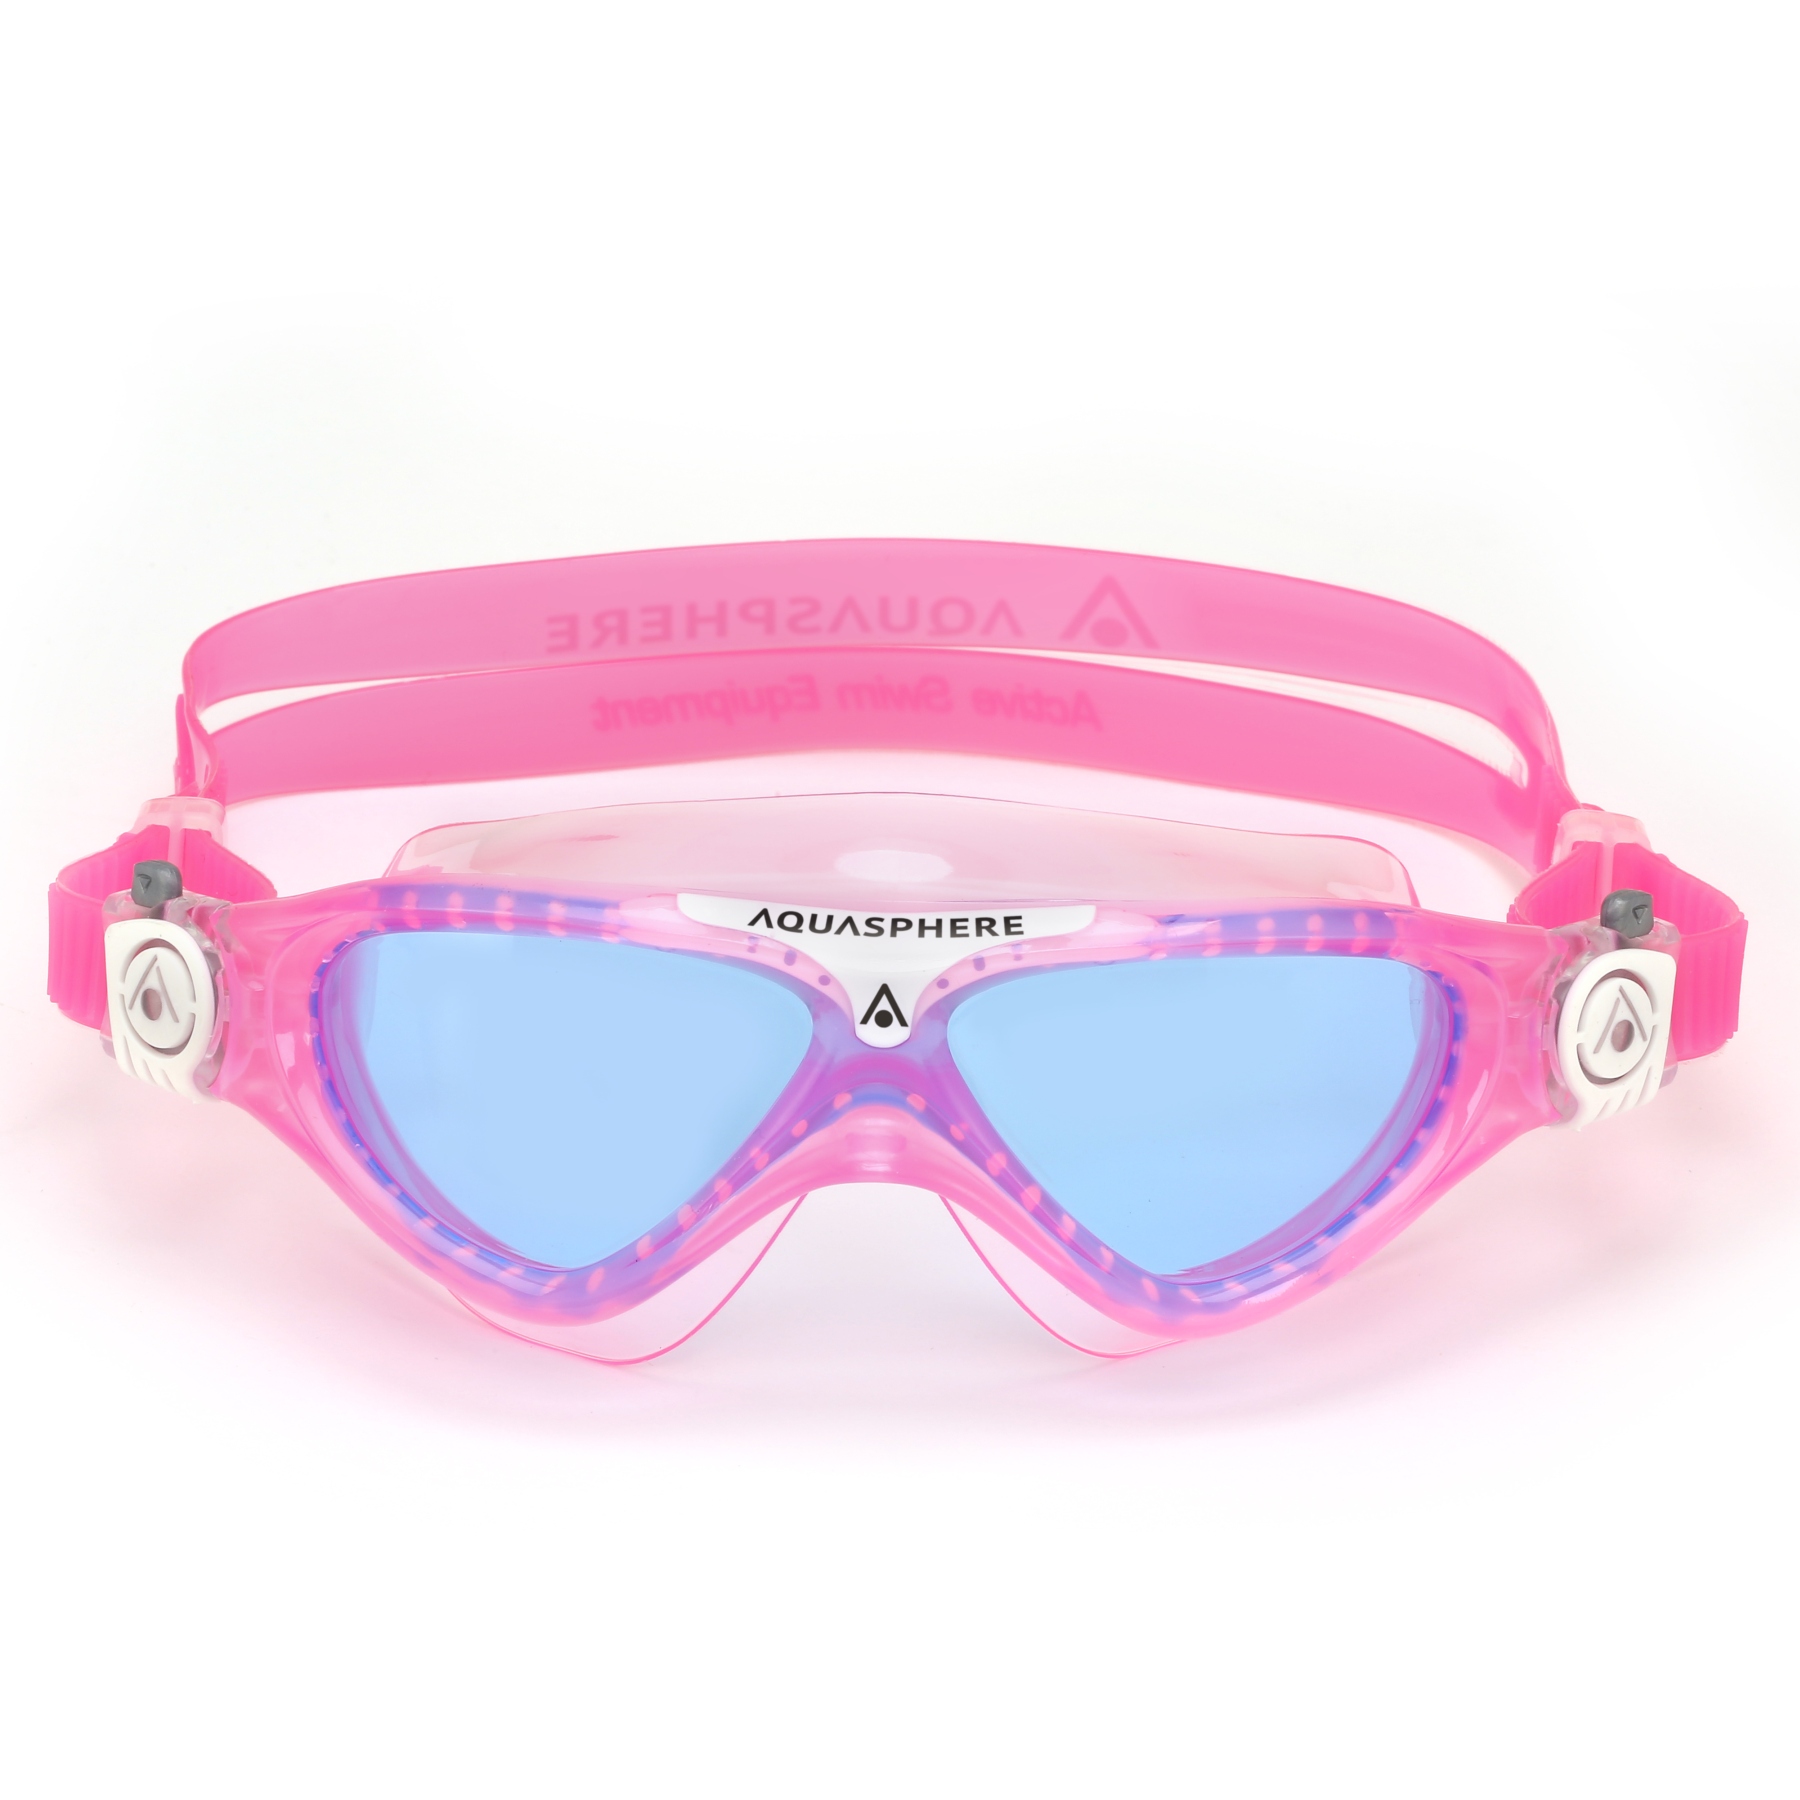 Produktbild von AQUASPHERE Vista Junior Kinder Schwimmbrille - Blau getönt - Pink/Weiß